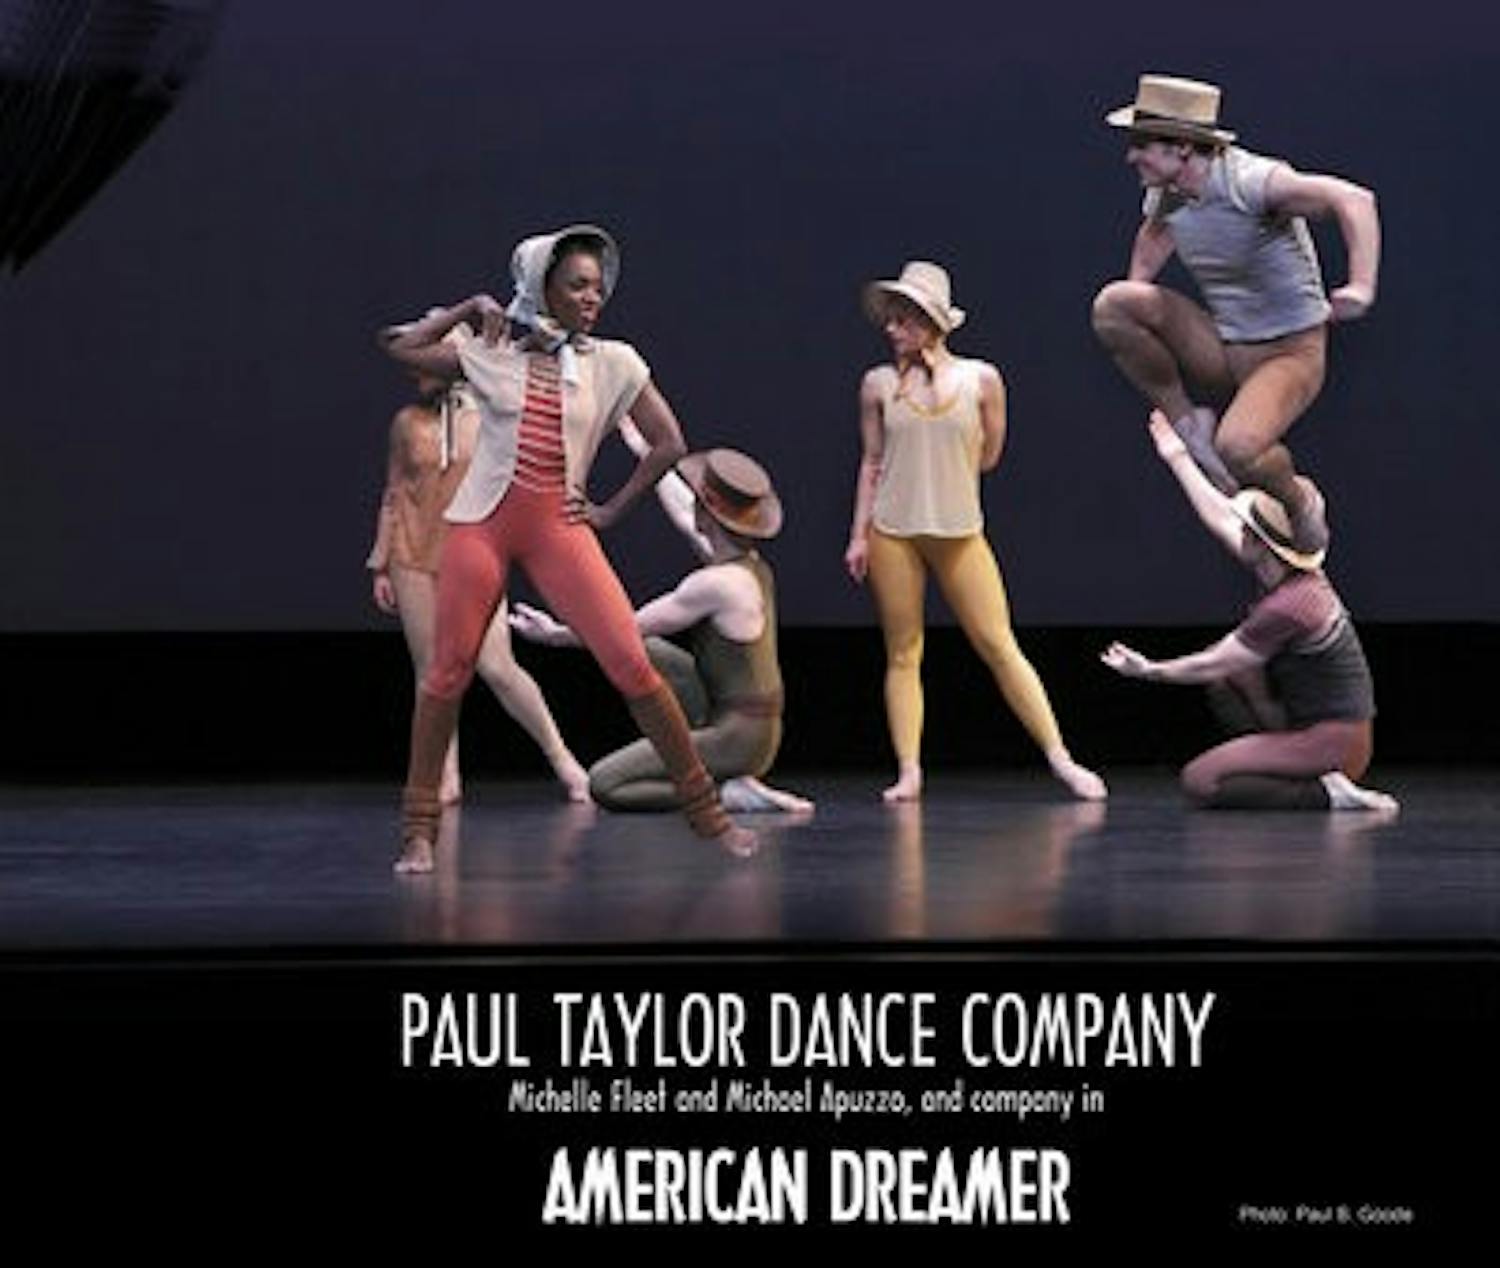 Paul Taylor Dance